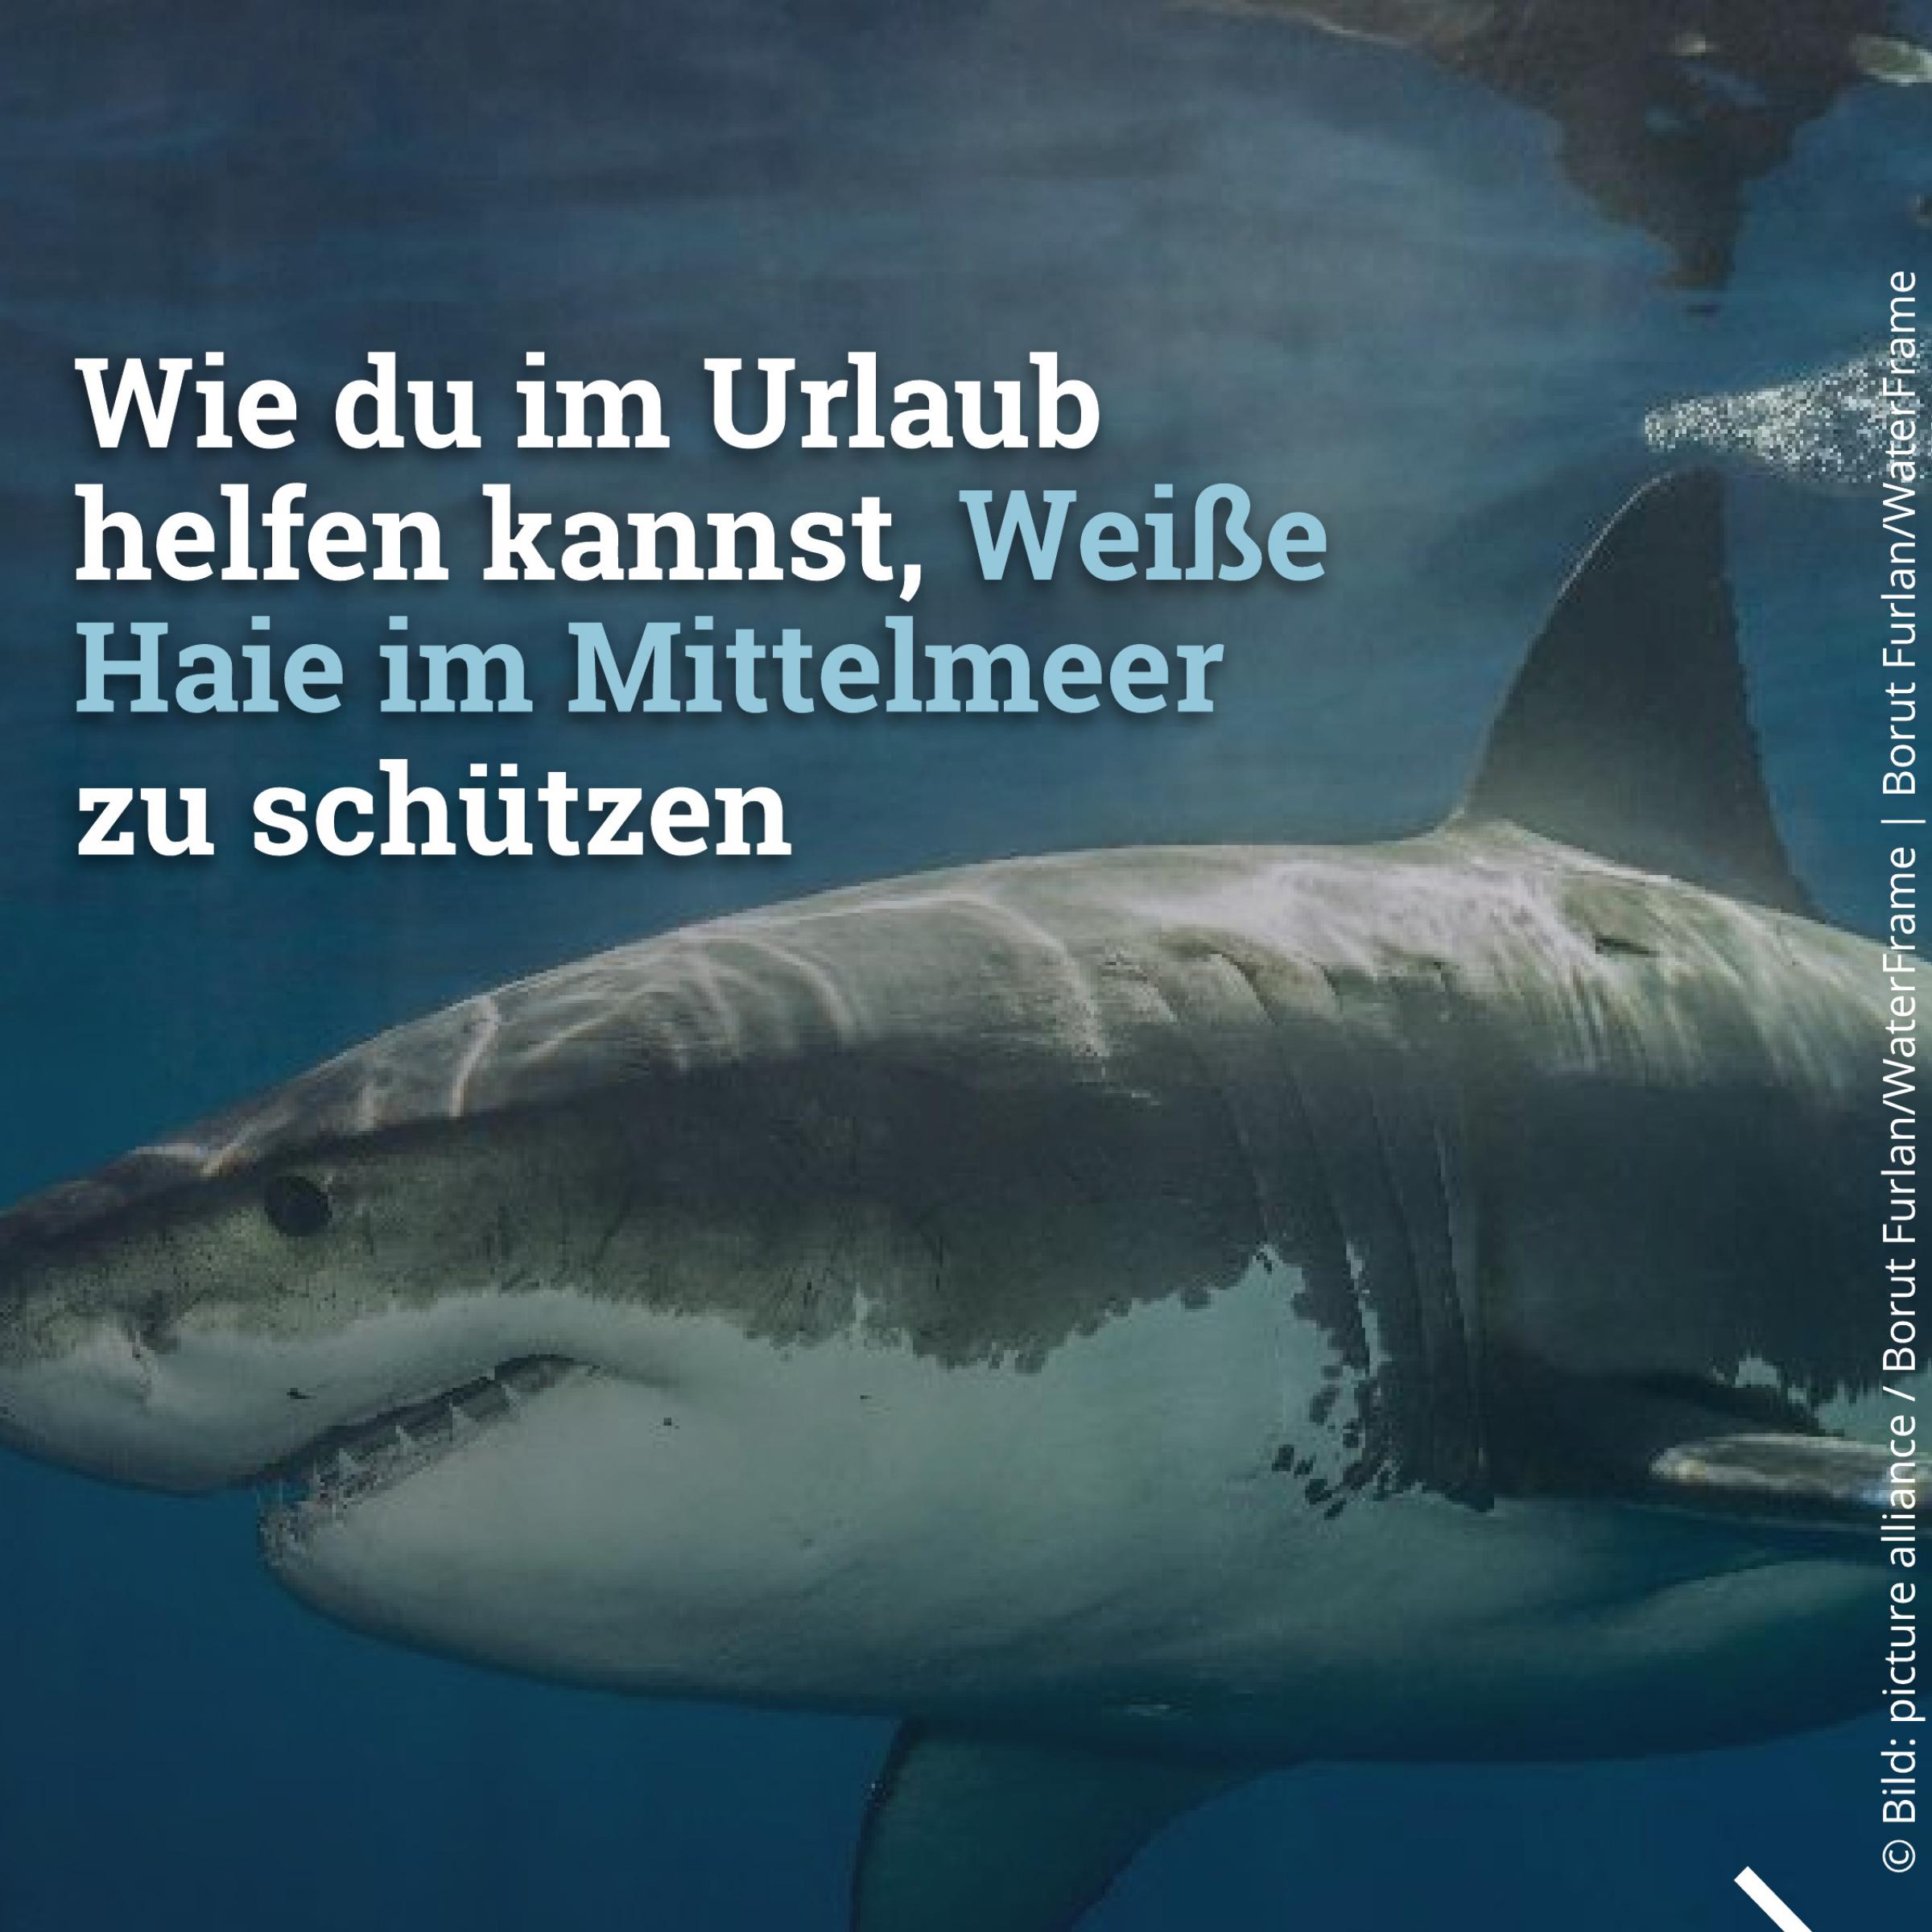 Wie du im Urlaub helfen kannst Weiße Haie im Mittelmeer zu schützen